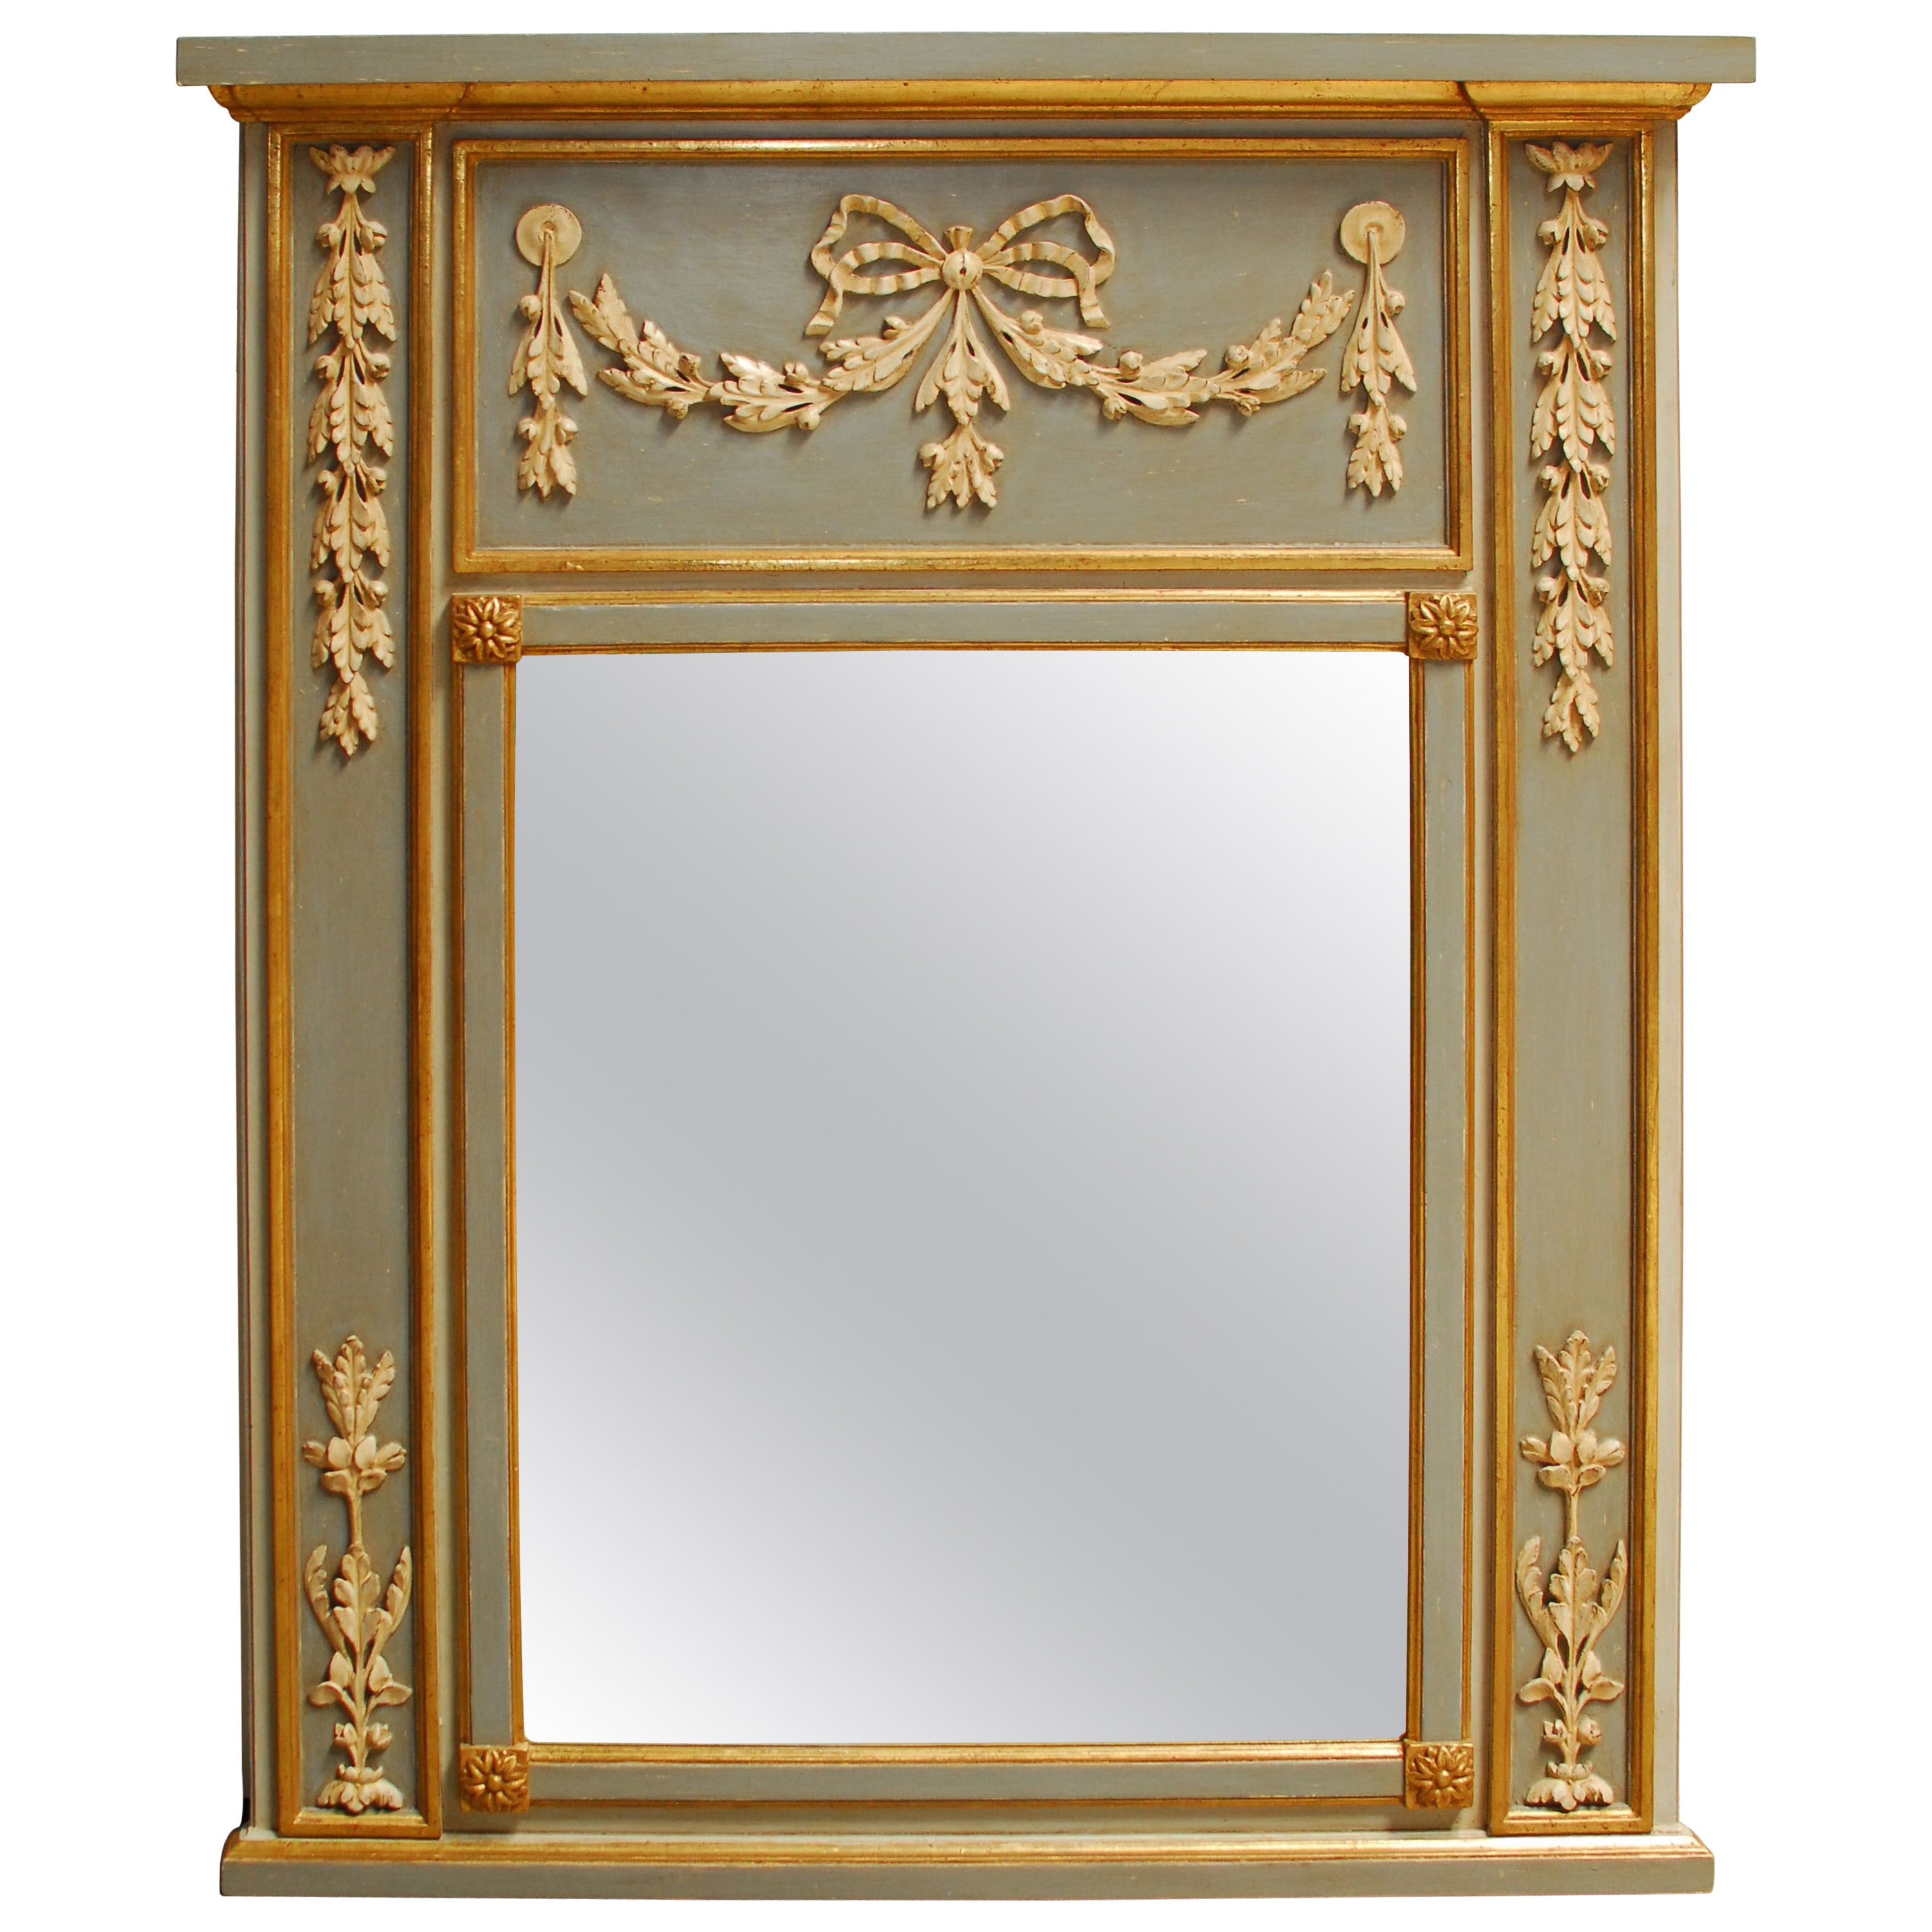 Cavallo Mirror Fair Louis XVI Trumeau Mirror